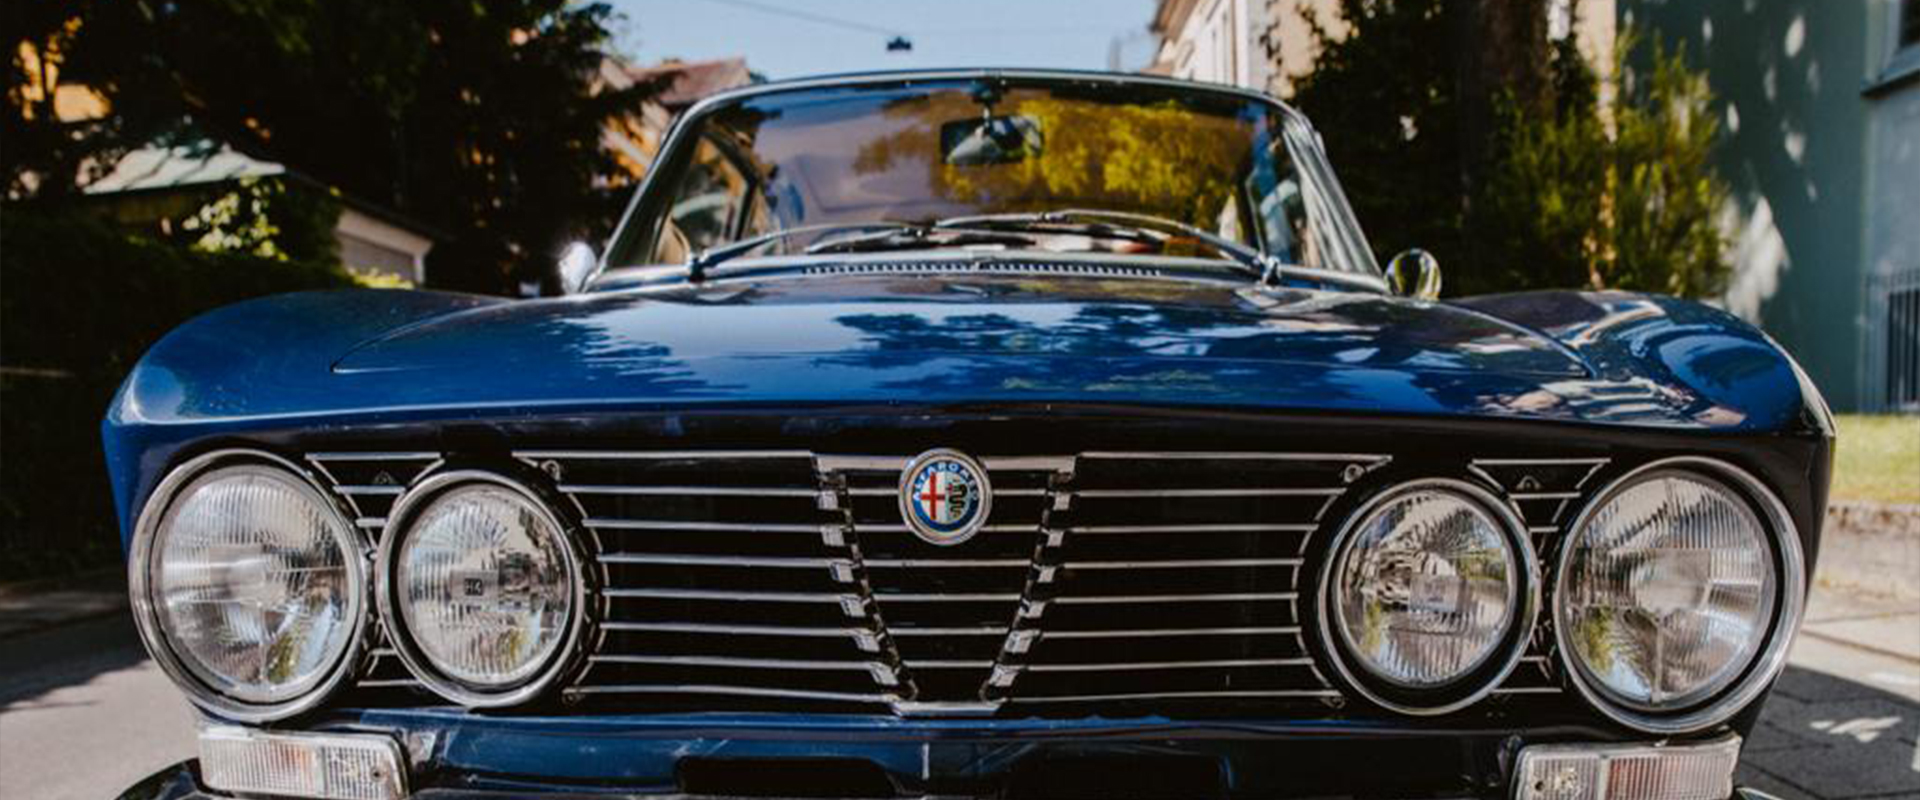 Seit 1978 habe ich mich darauf spezialisiert, den technischen Originalzustand von Alfa Romeo Oldtimern wiederherzustellen